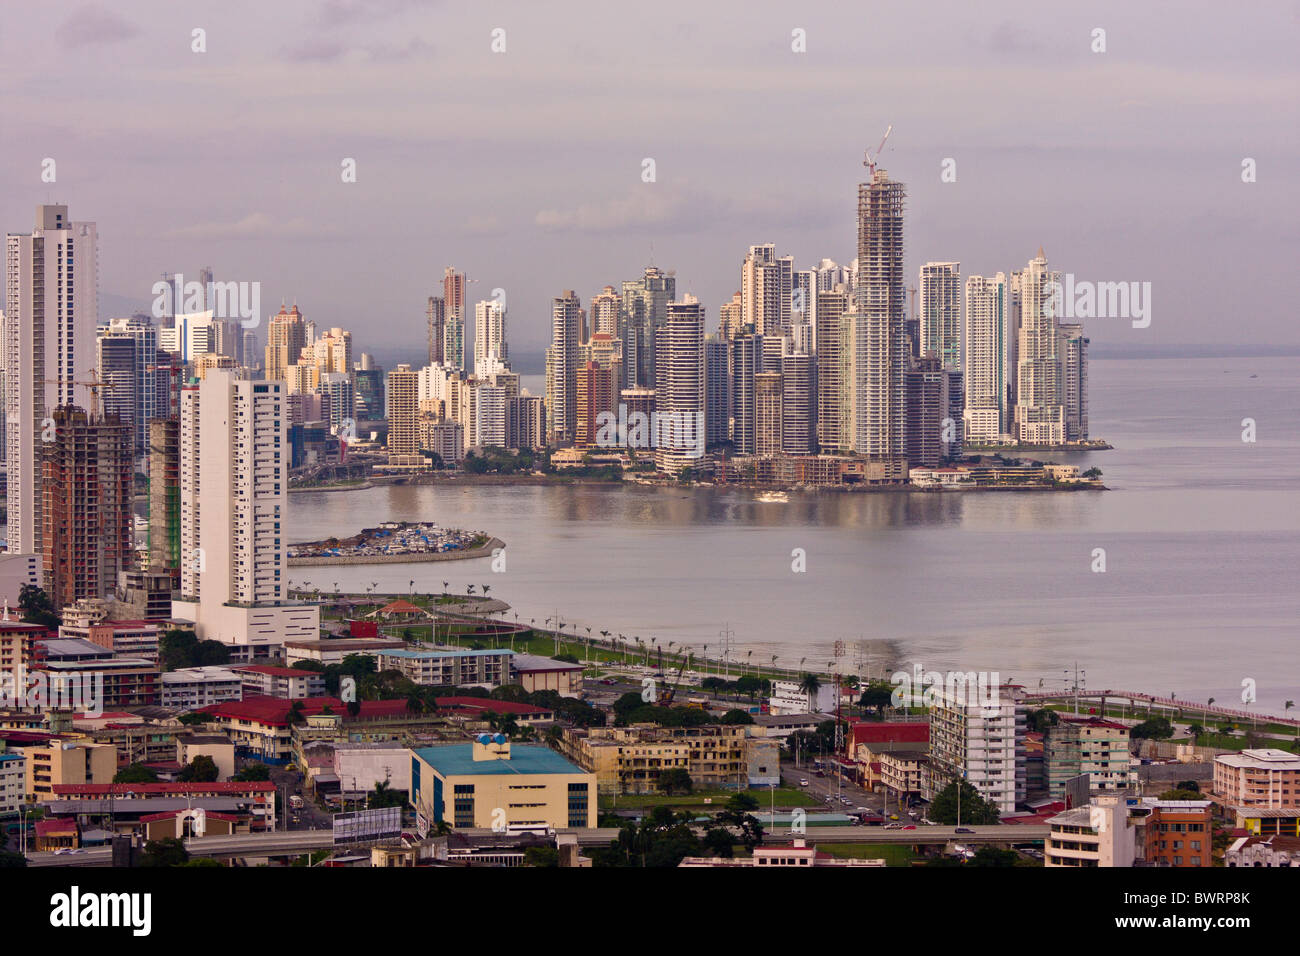 PANAMA CITY, PANAMA - Panama City skyline, grattacieli sul punto di Paitilla, in alto a destra. Foto Stock